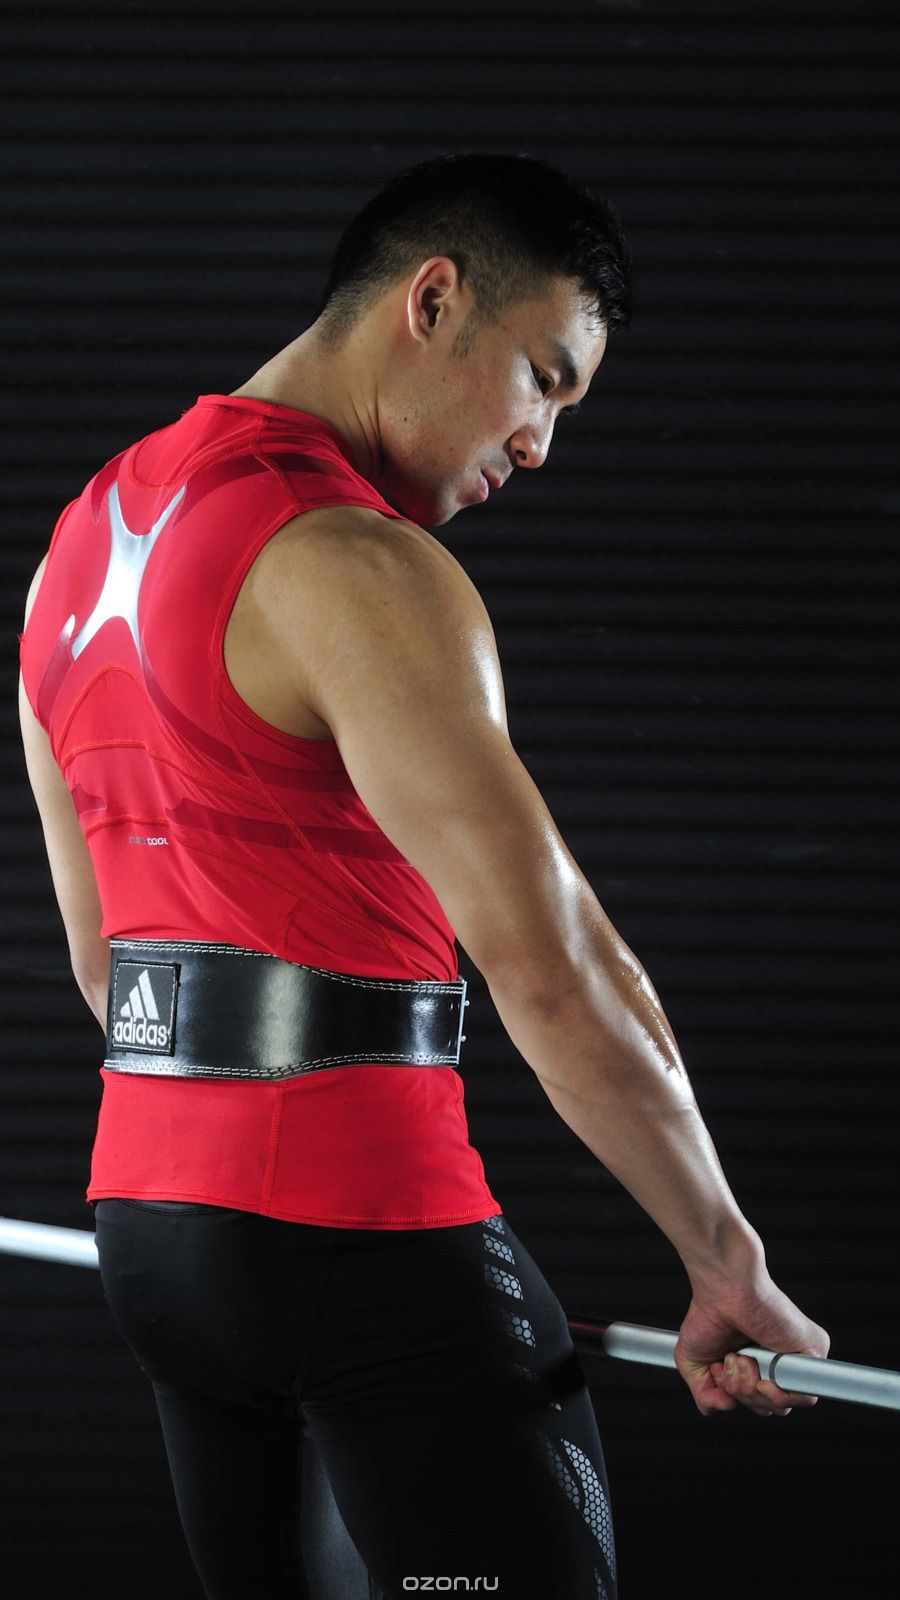     Adidas Leeather Lumbar Belt, : ,  XXL